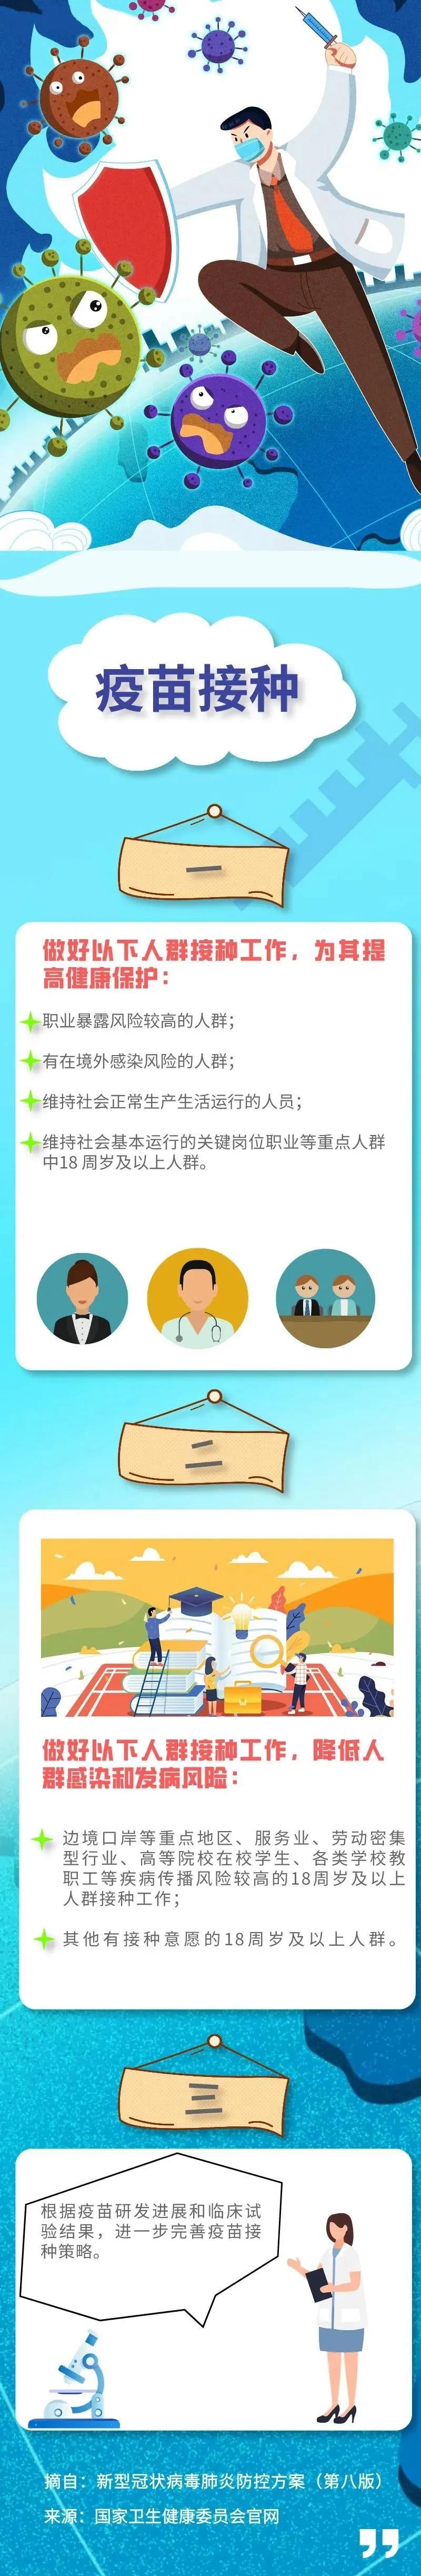 宏胜达提示您做好疫苗接种，助力新冠肺炎疫情常态化防控